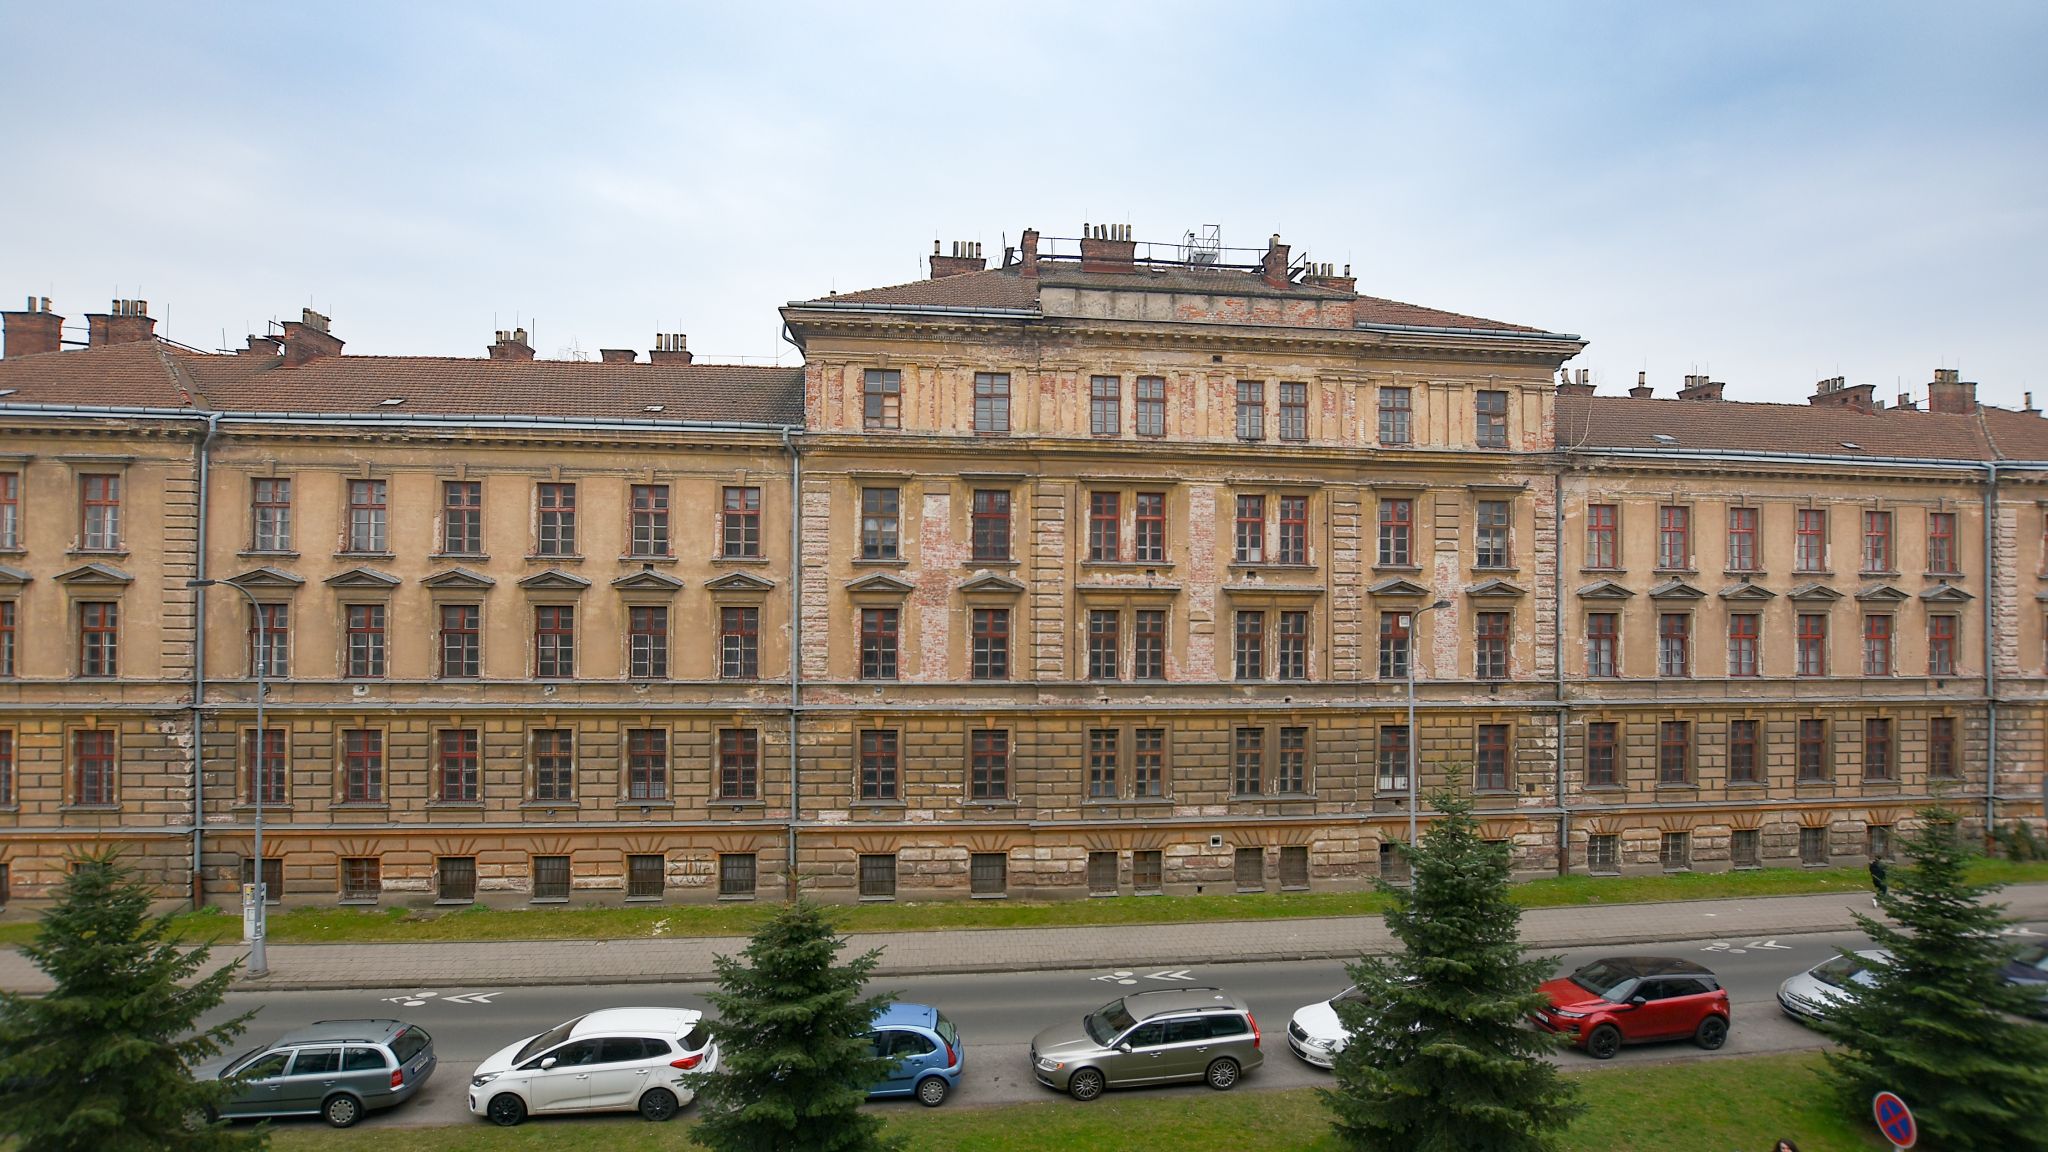 Obnova Vrbenského kasáren v Hradci Králové nabízí vznik nového prostoru pro živou i muzejní kulturu